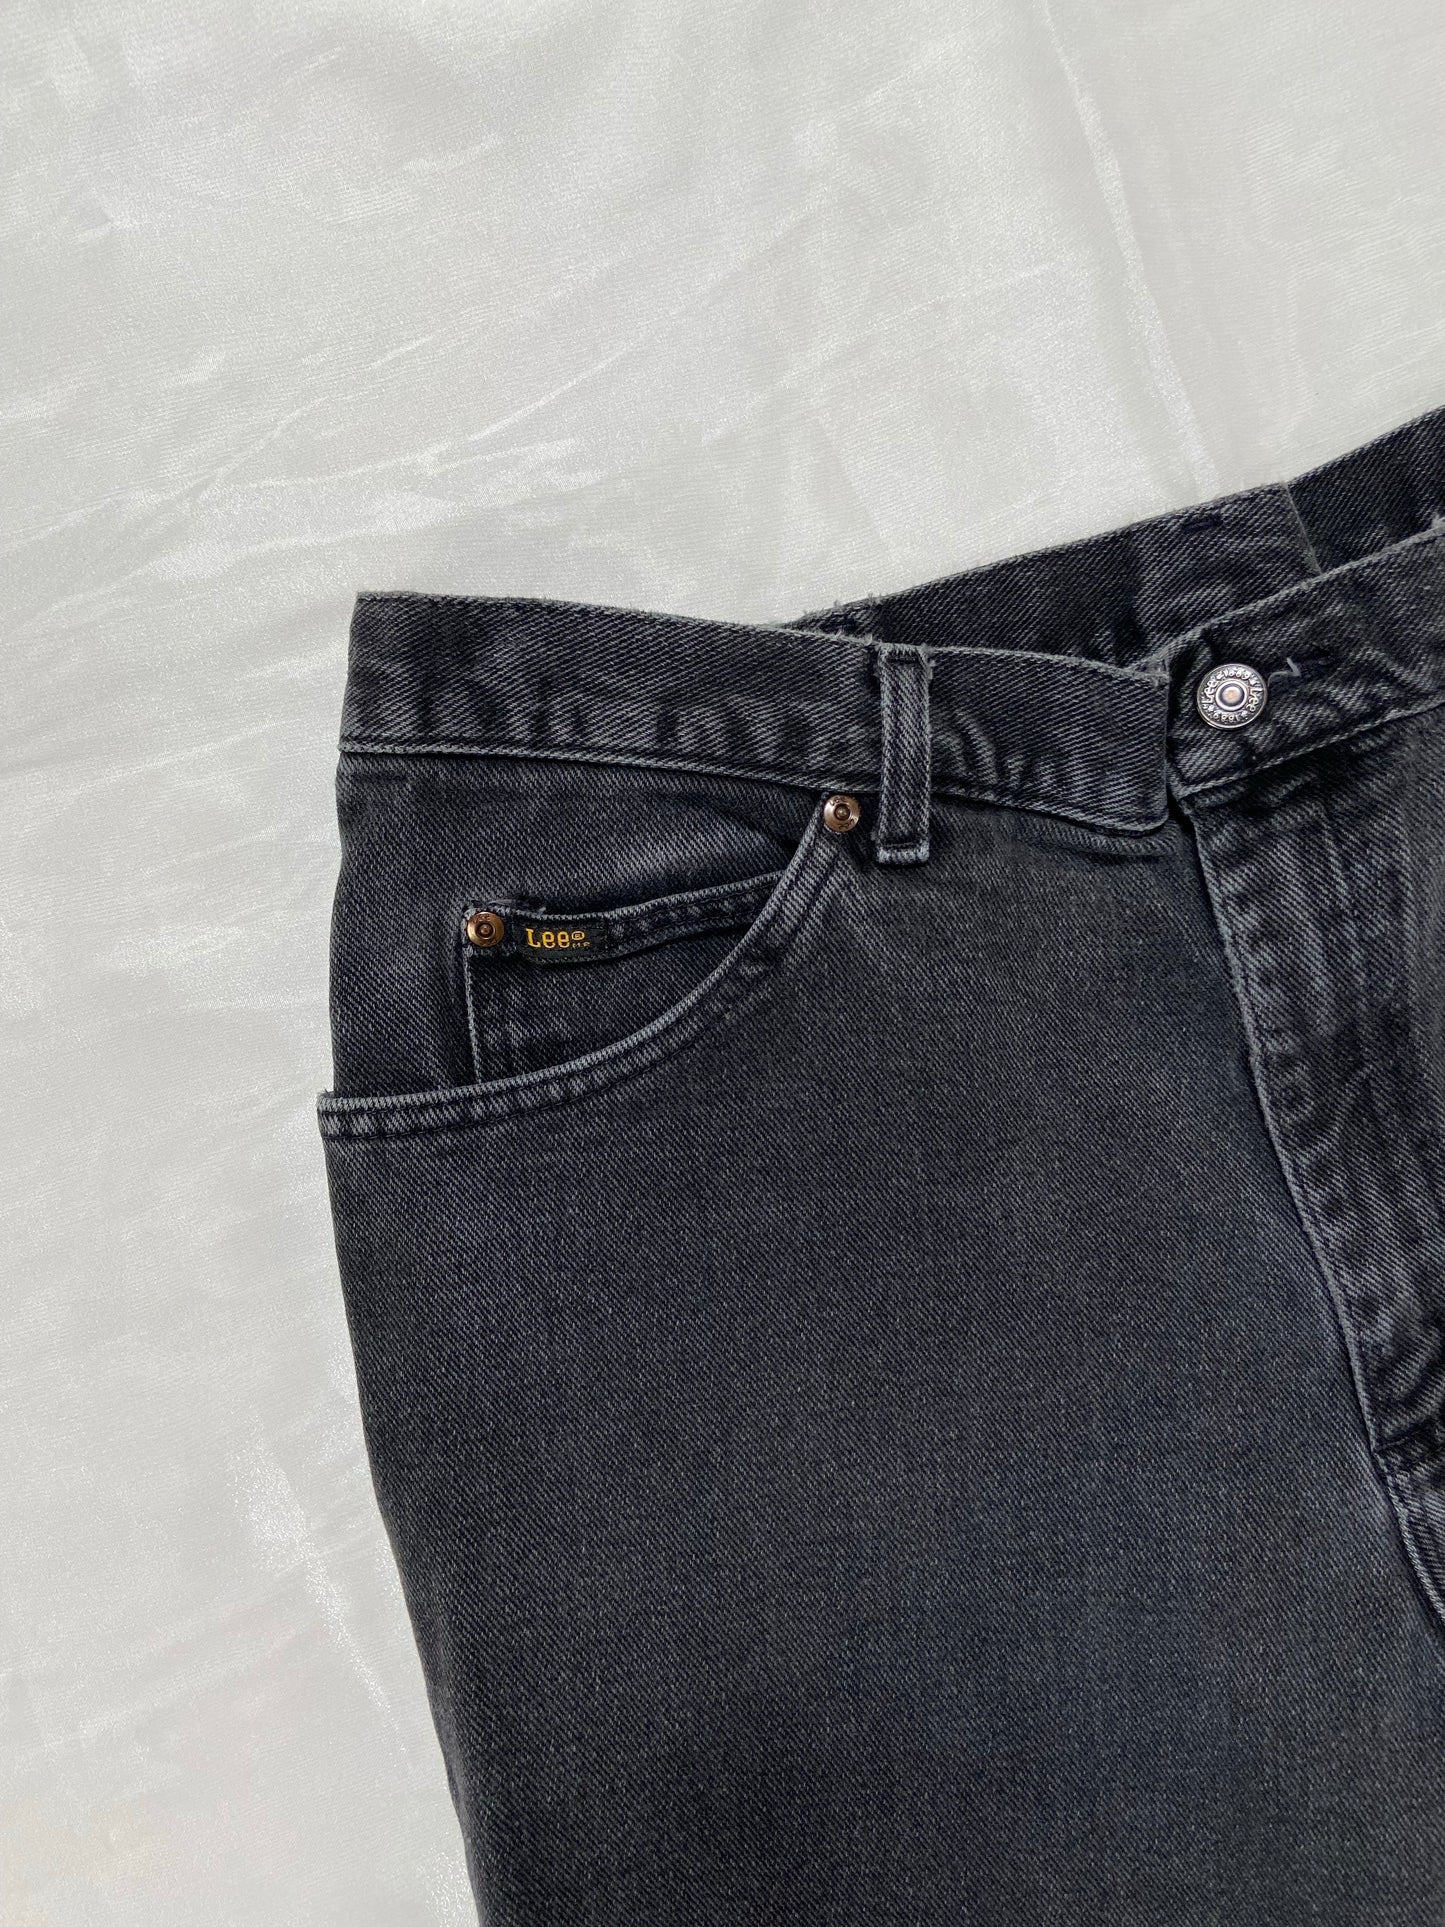 Black Lee Jeans - 36”